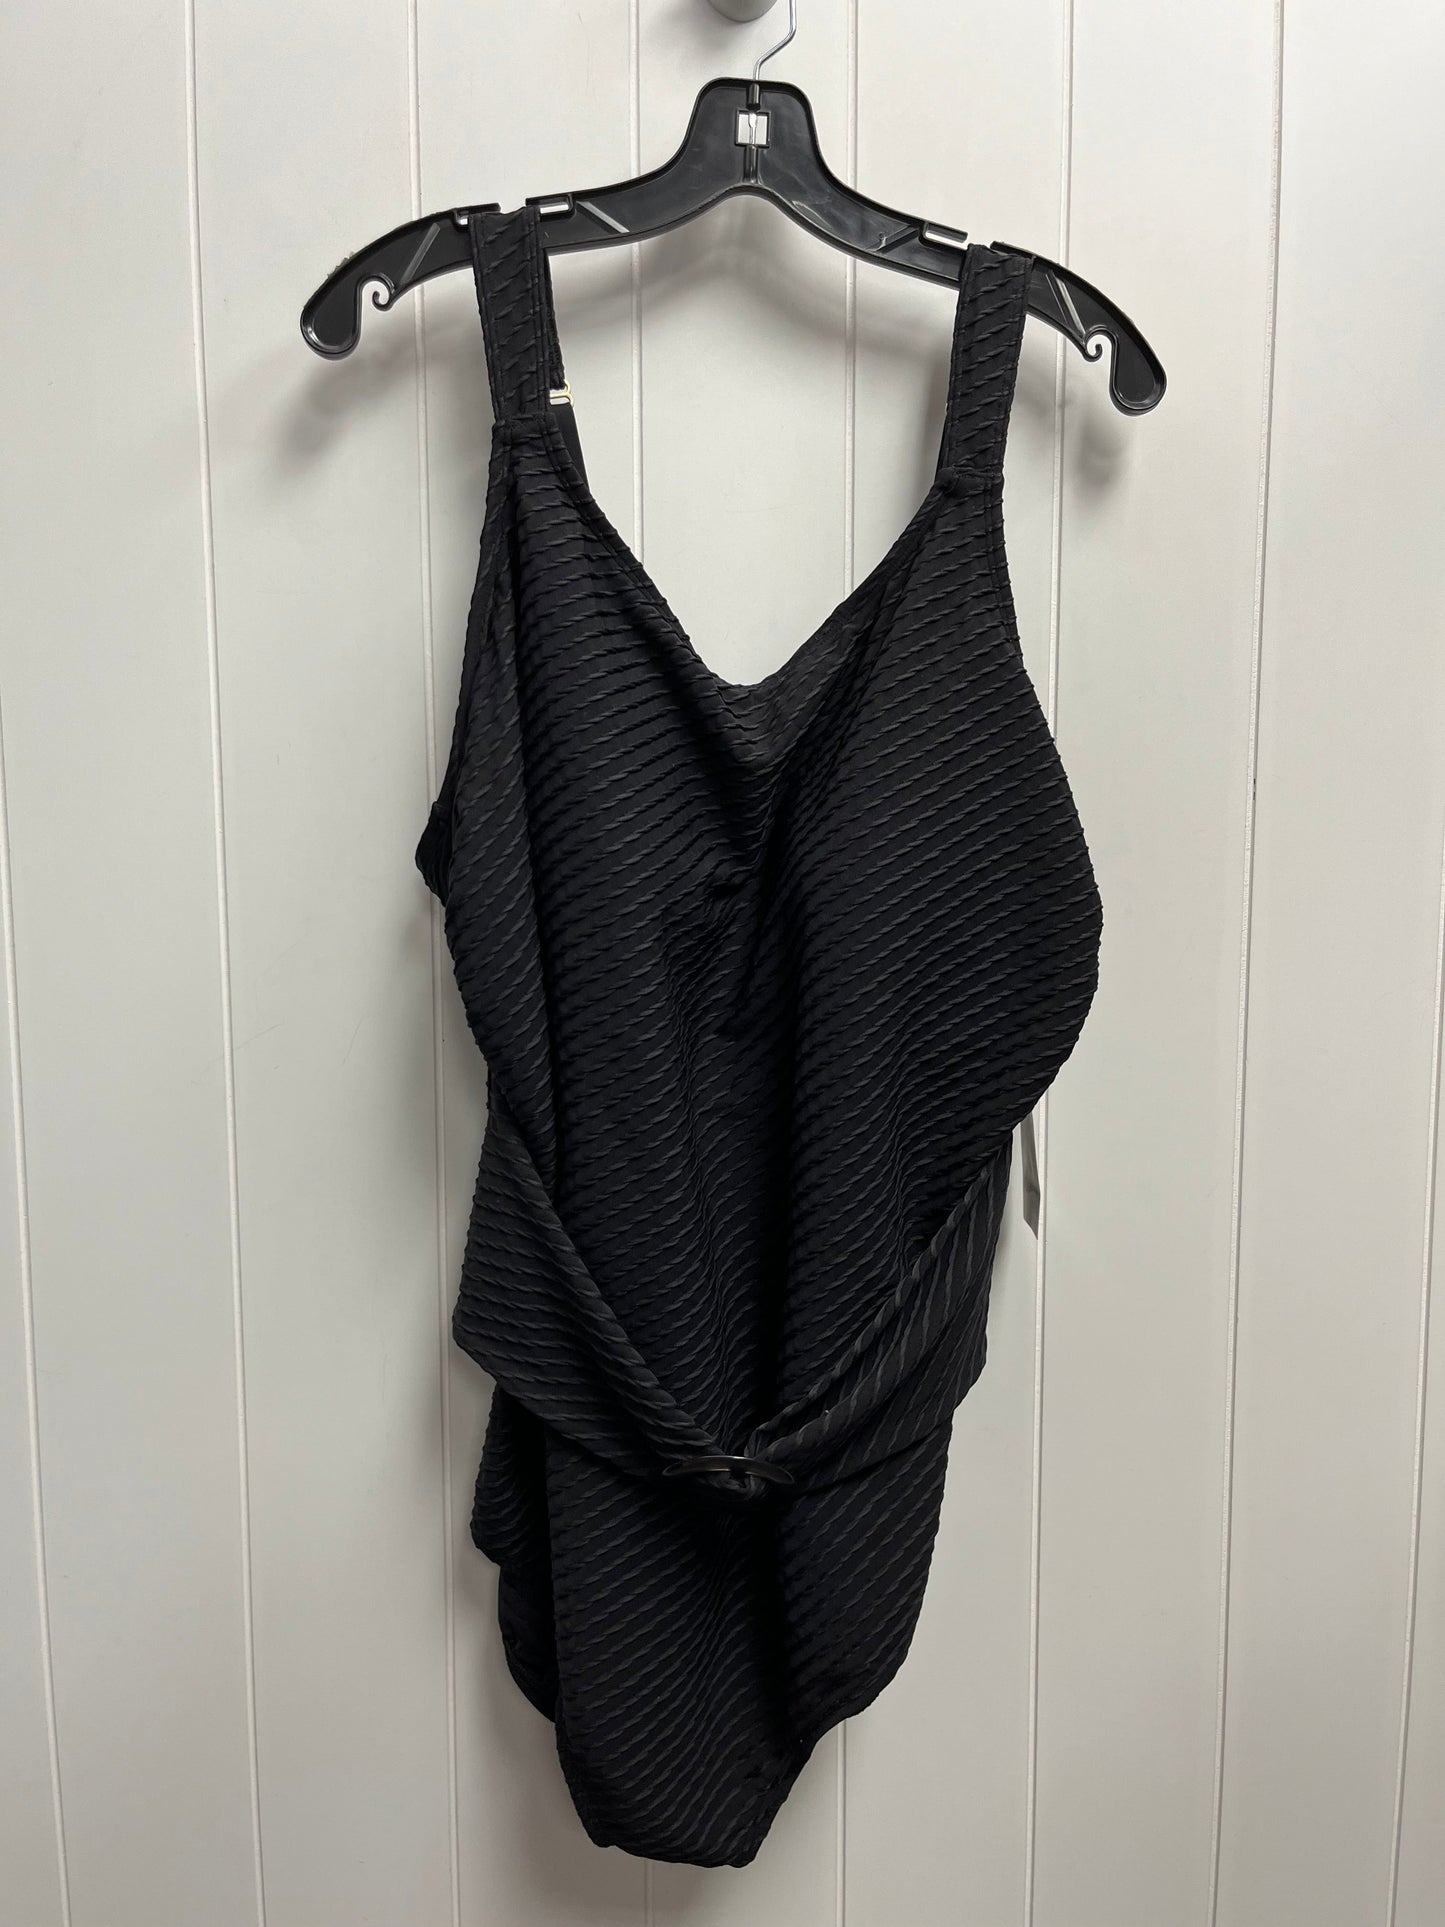 Black Swimsuit LYRCA, Size 2x